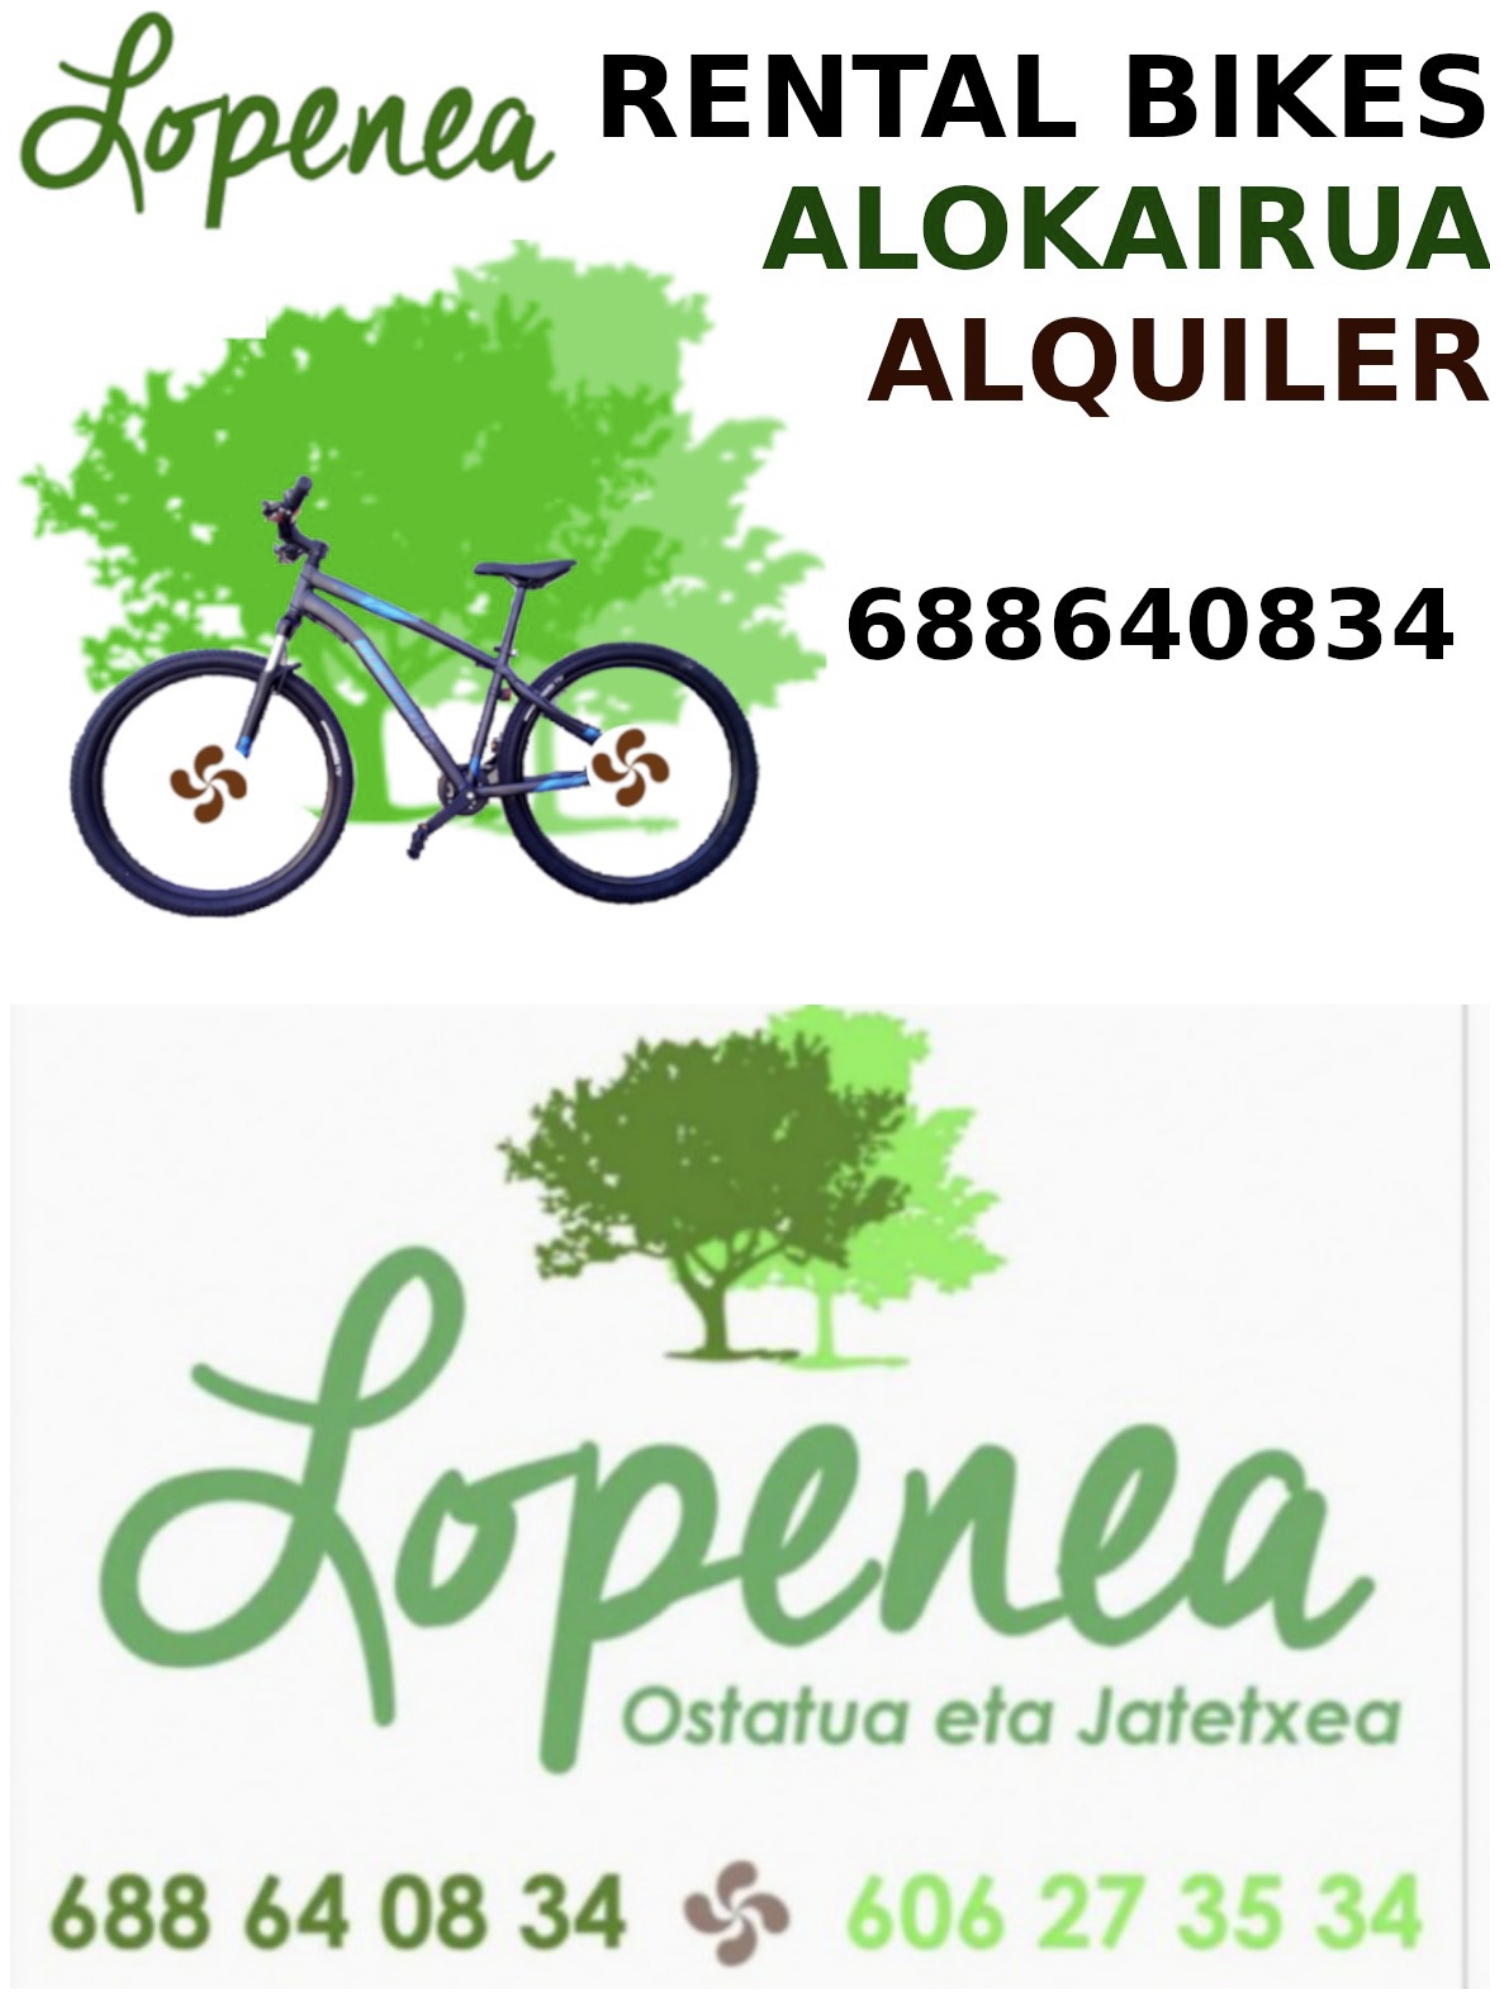 Hostal/Alquiler  de  Bicicletas  LOPENEA  